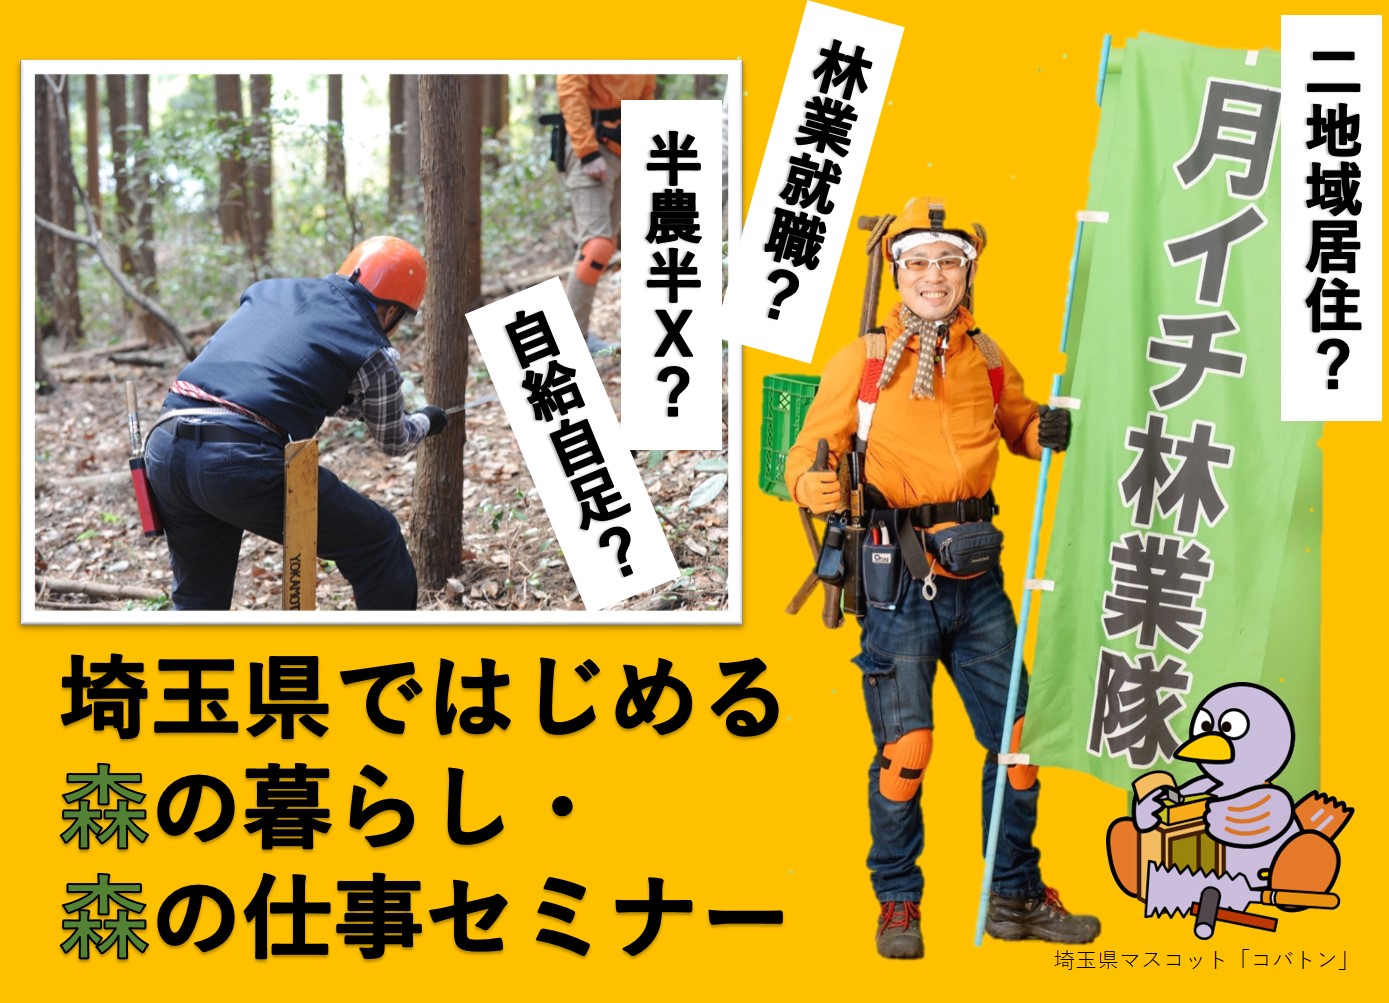 【満員御礼】埼玉県ではじめる森の暮らし・森の仕事 | 移住関連イベント情報